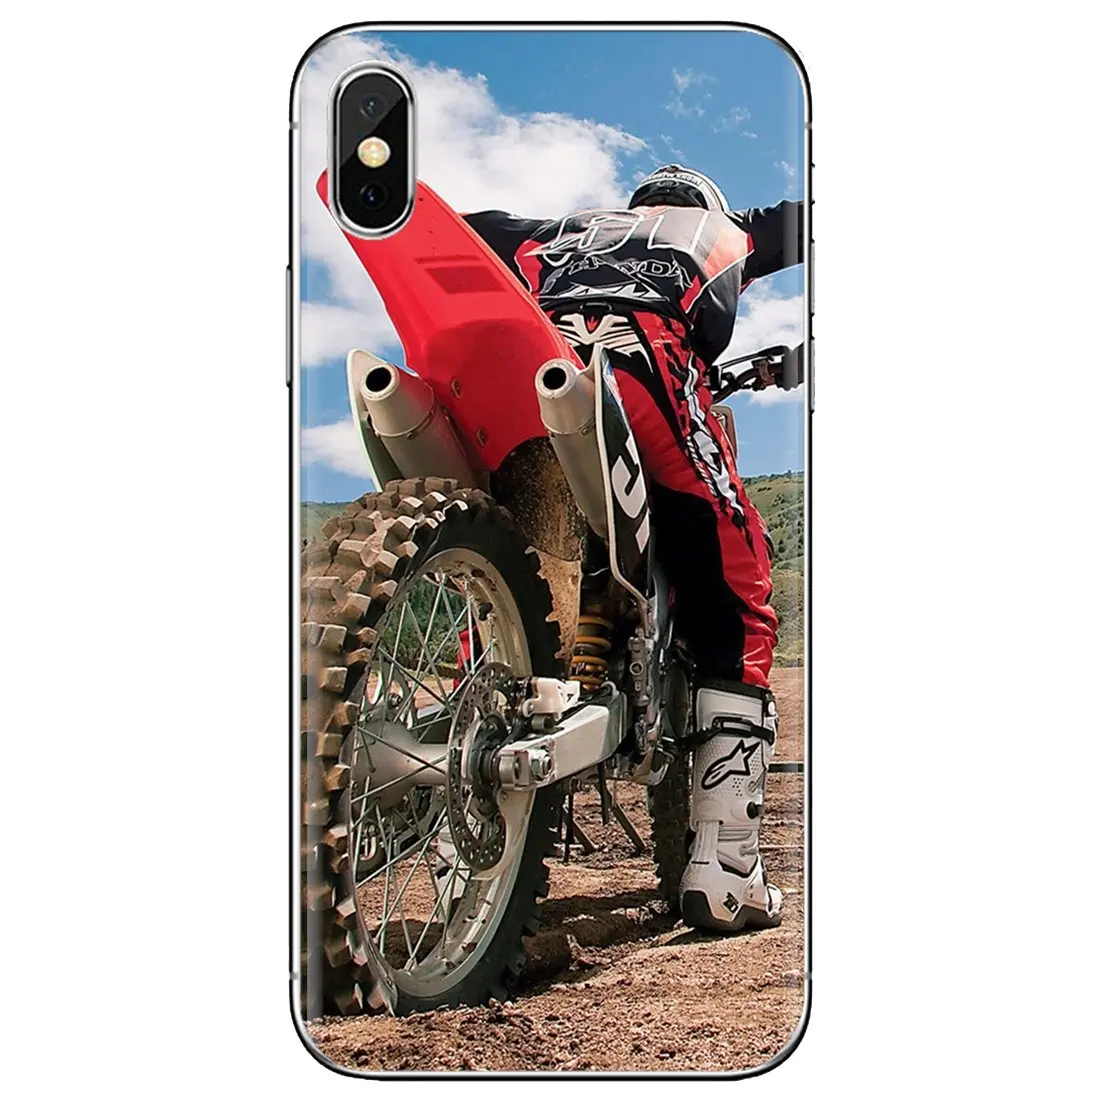 Moto Cross Dirtbikes Bike Case For Samsung Galaxy A10 A20 A30 A40 A50 51 A70 A80 